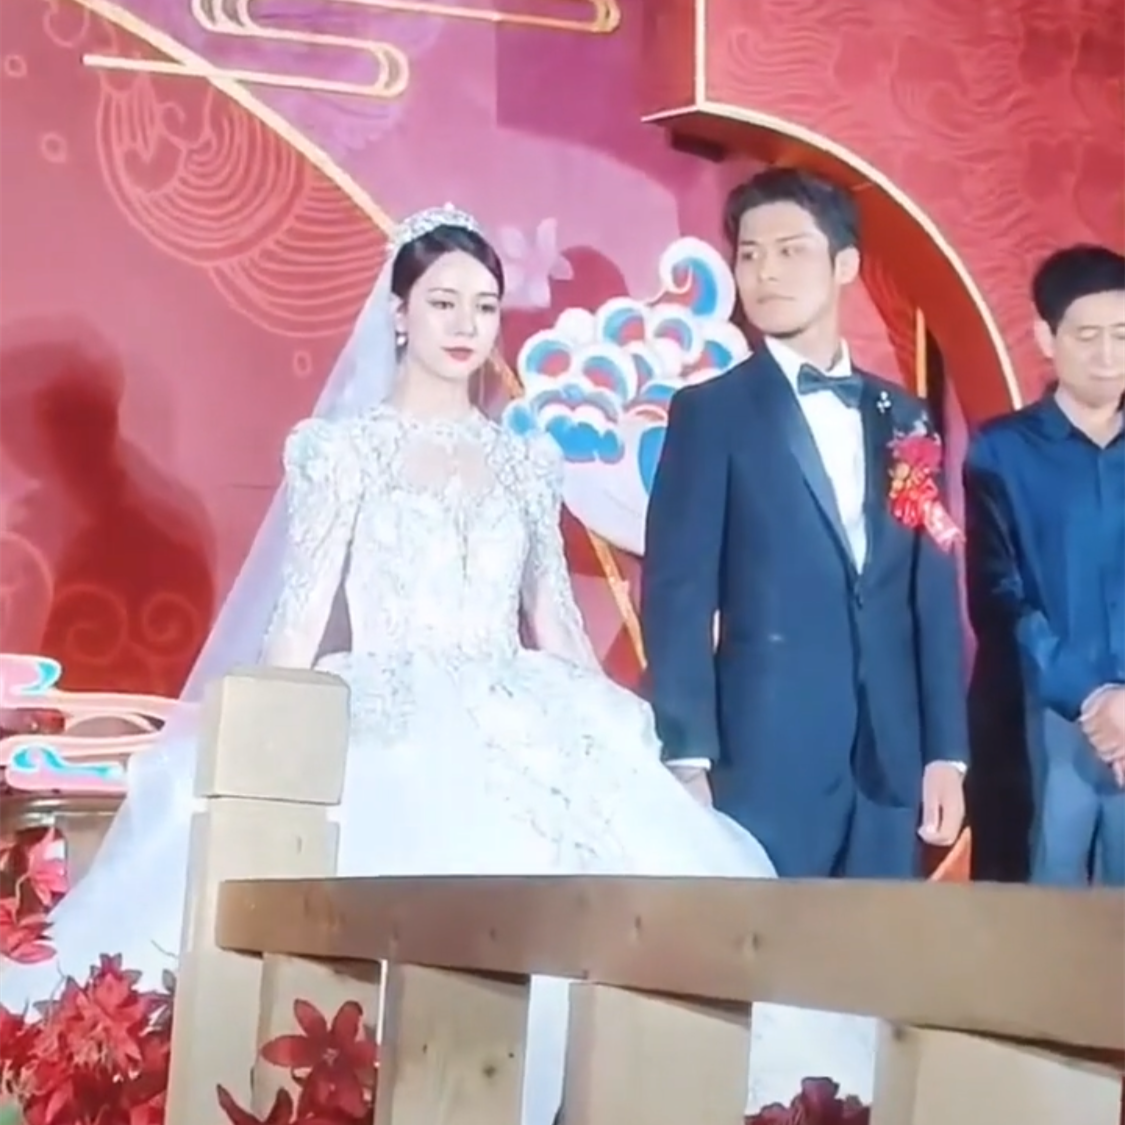 知名网红 大杨哥 结婚 新娘酷似吉娜 现场都是豪车 社会热点 收录中国